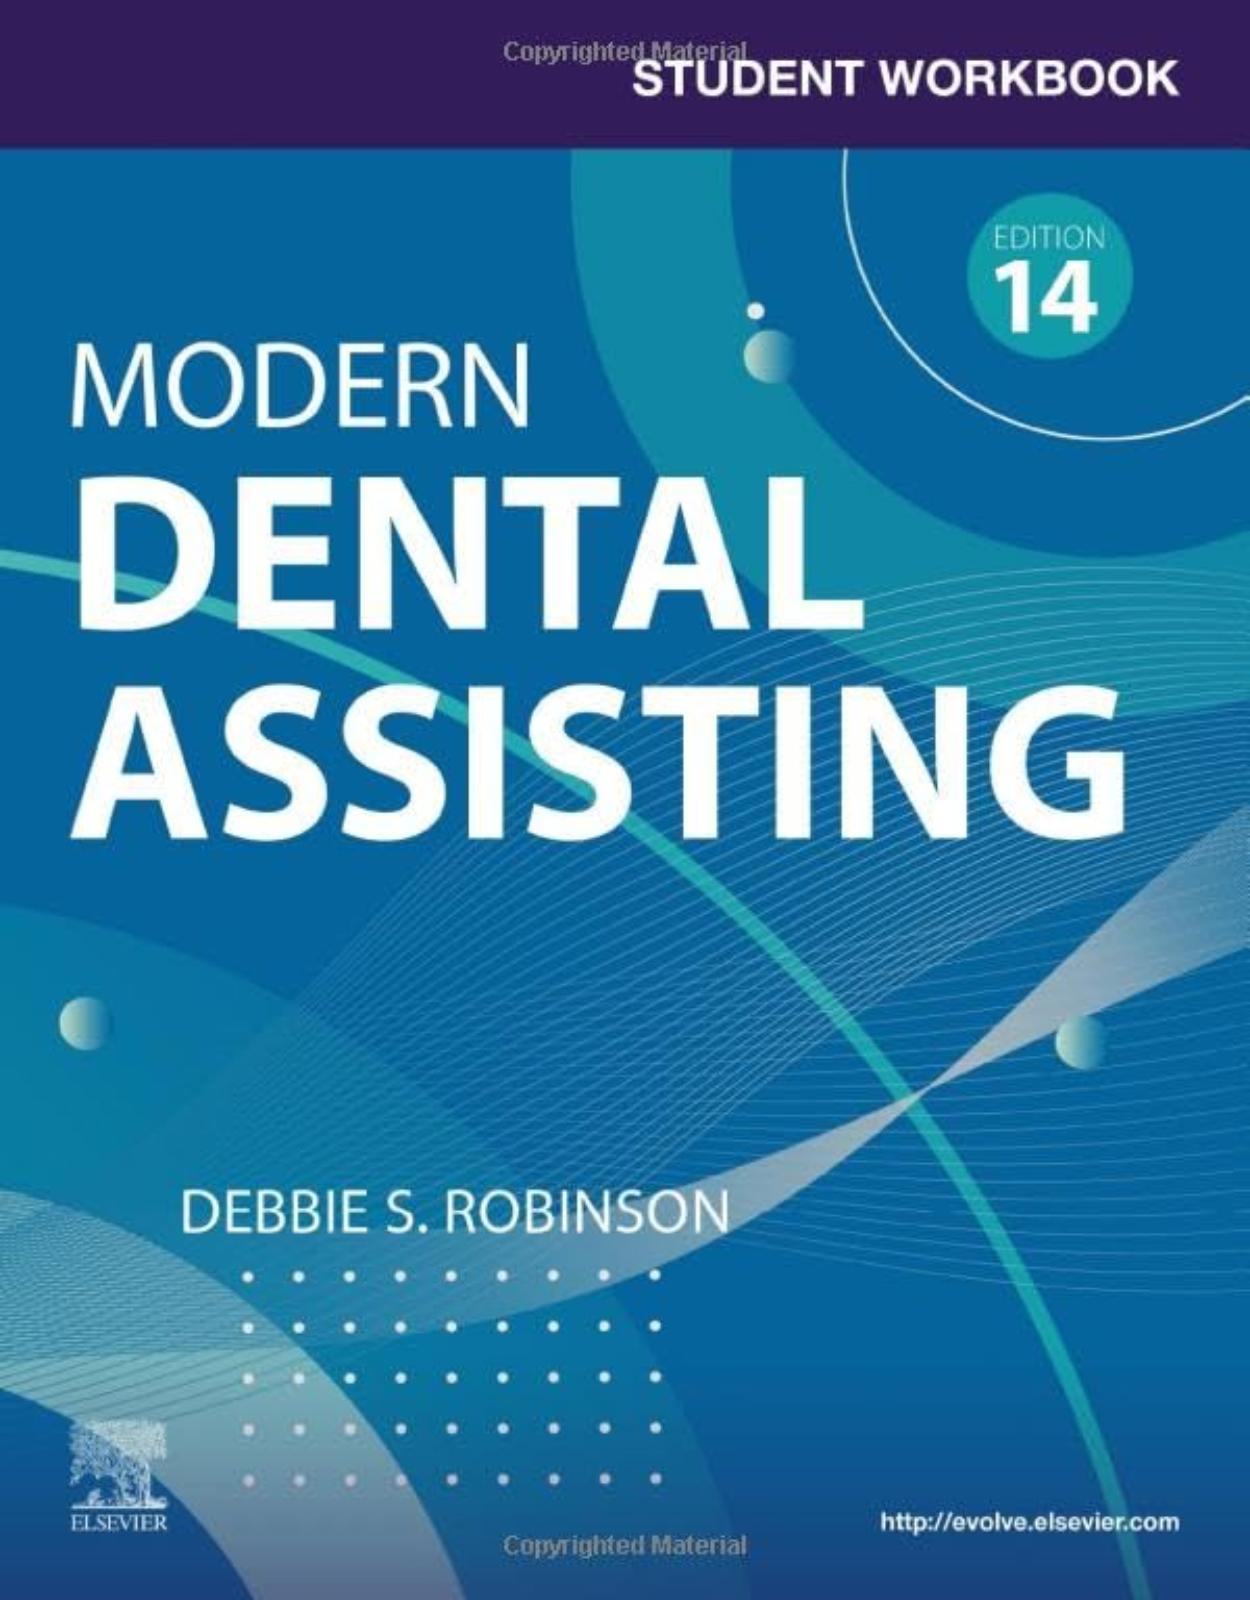 Student Workbook for Modern Dental Assisting 